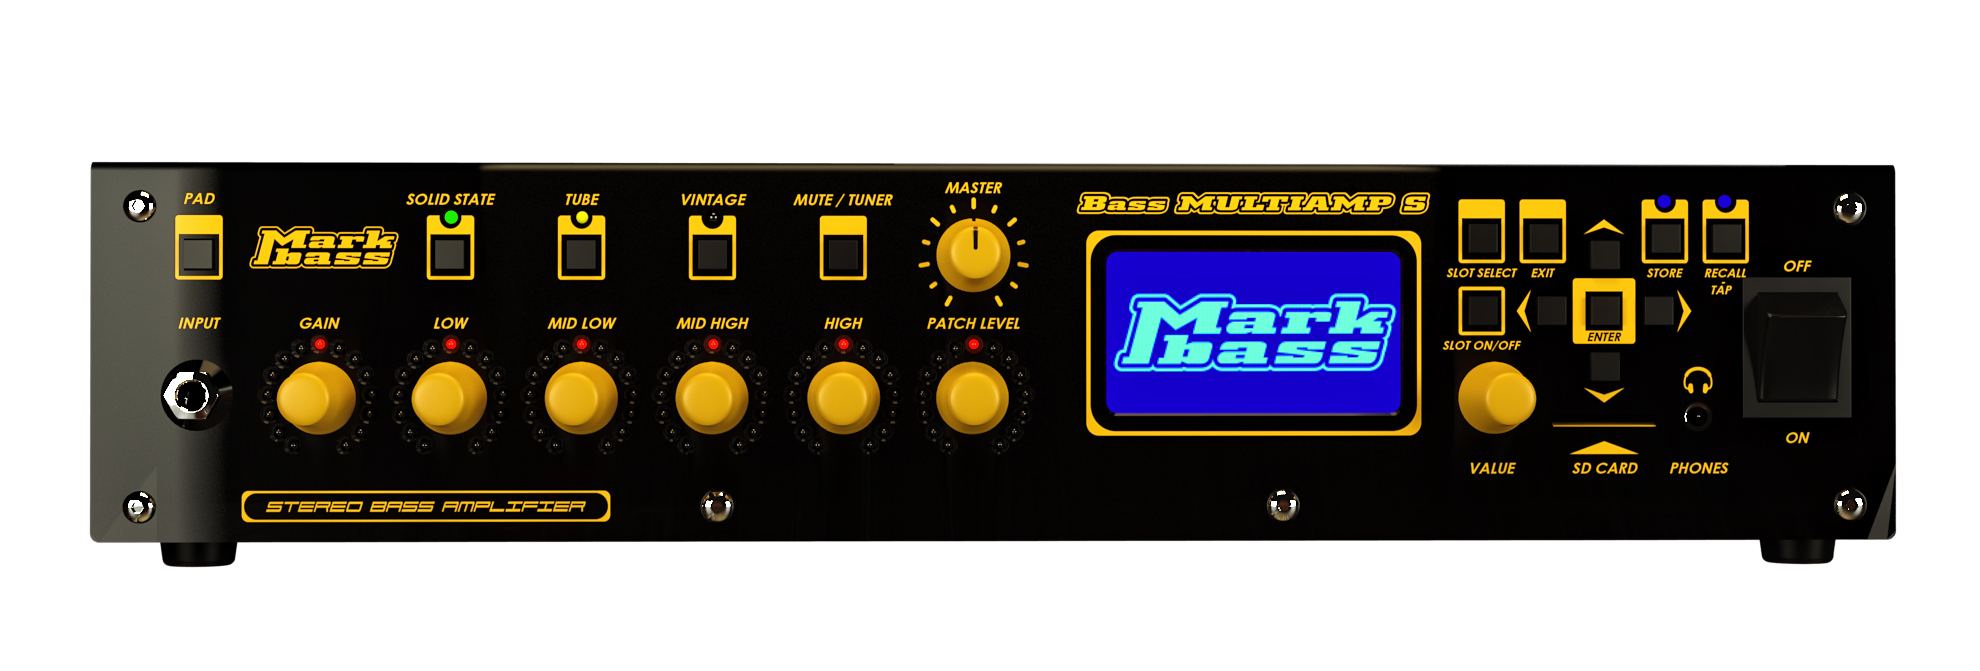 Markbass Bass Multiamp S 2015 Stereo Bass Amplifier 2x500w 4ohms - Bass amp head - Variation 1